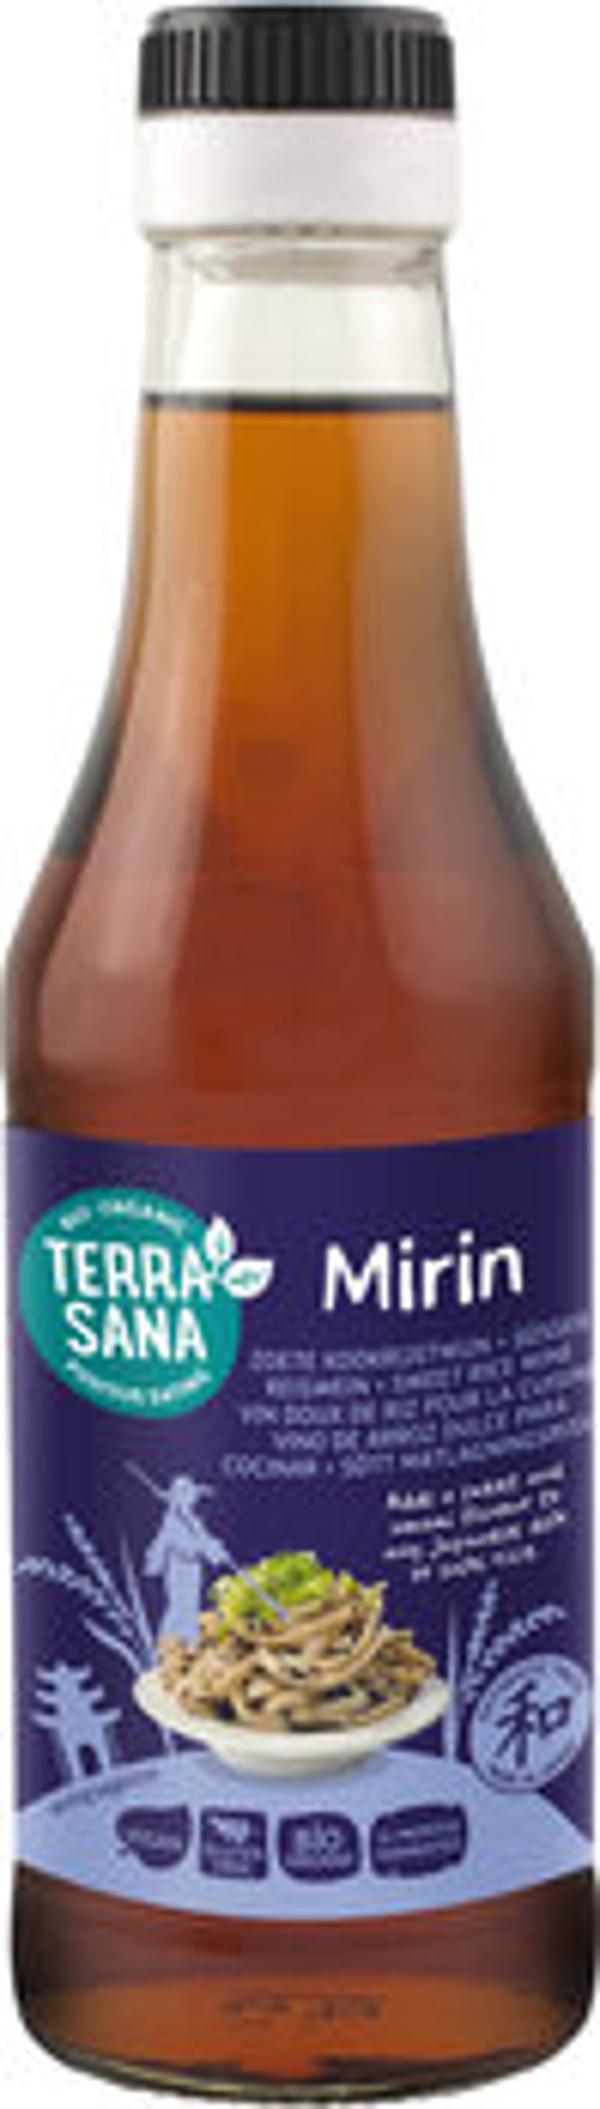 Produktfoto zu Mirin -  Süsser Kochreiswein